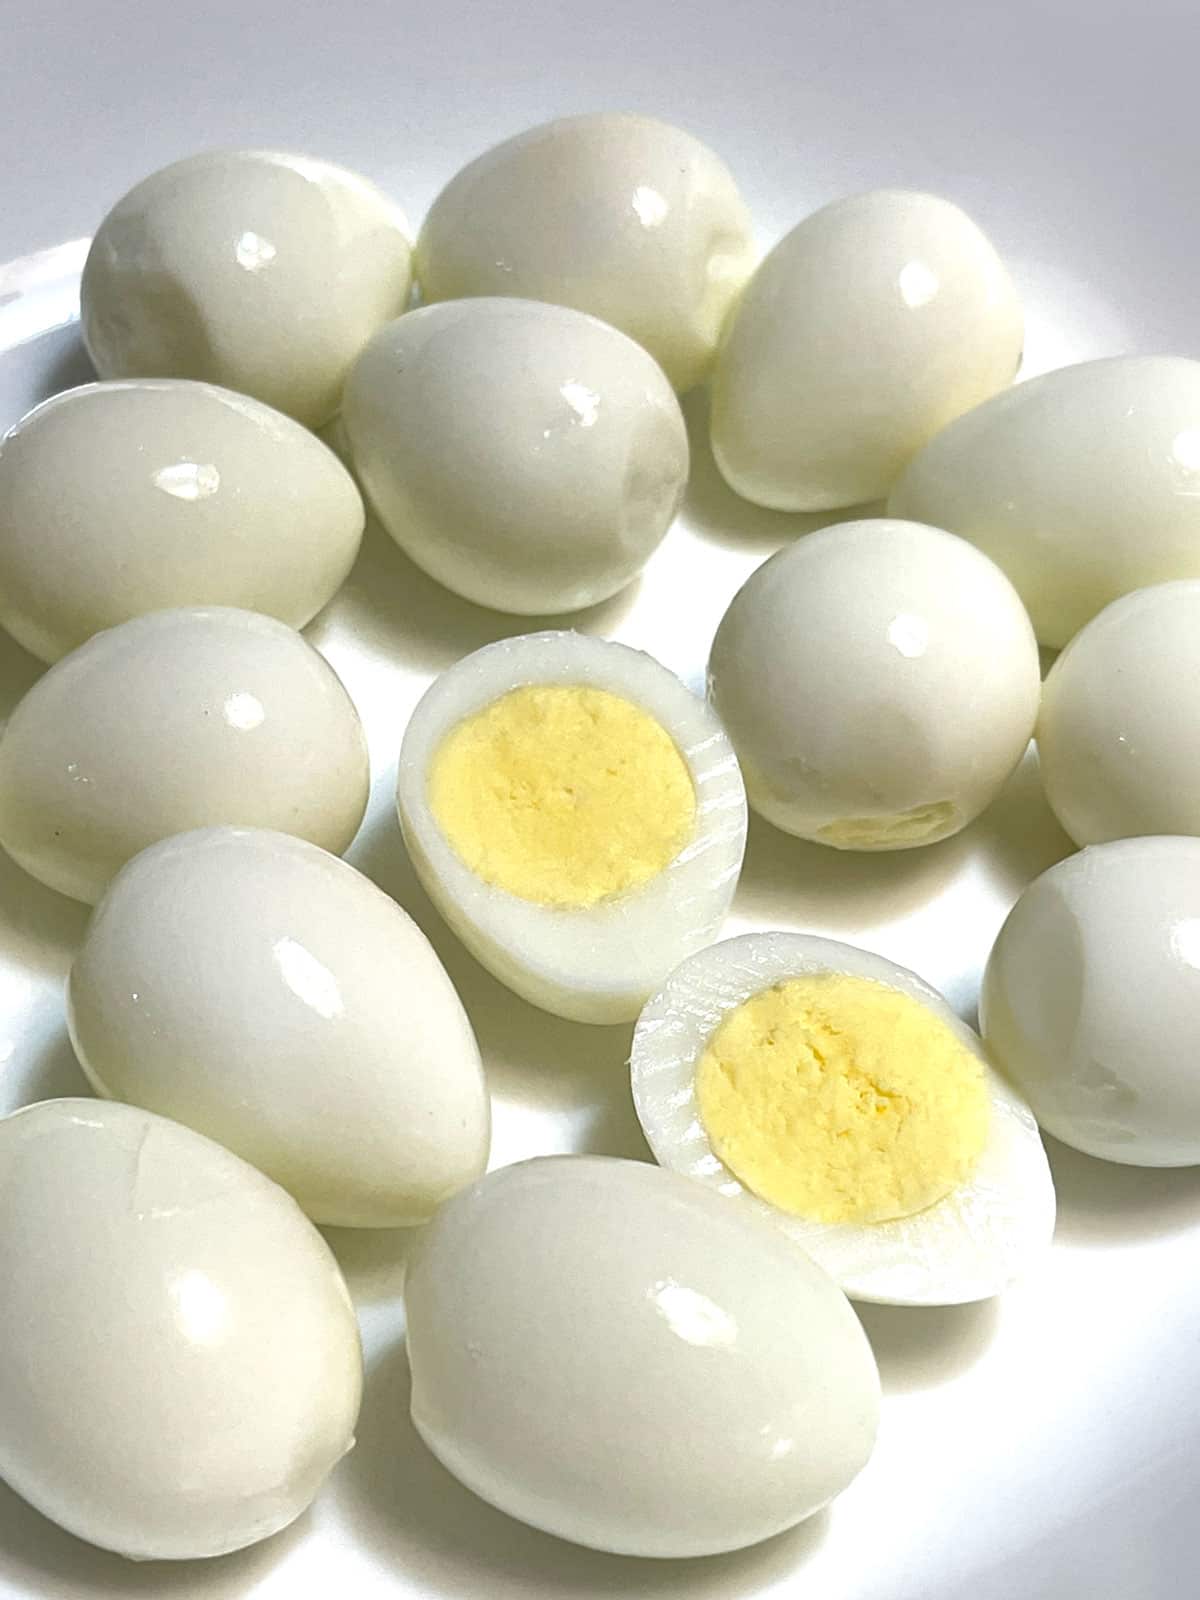 hard boiled quail eggs